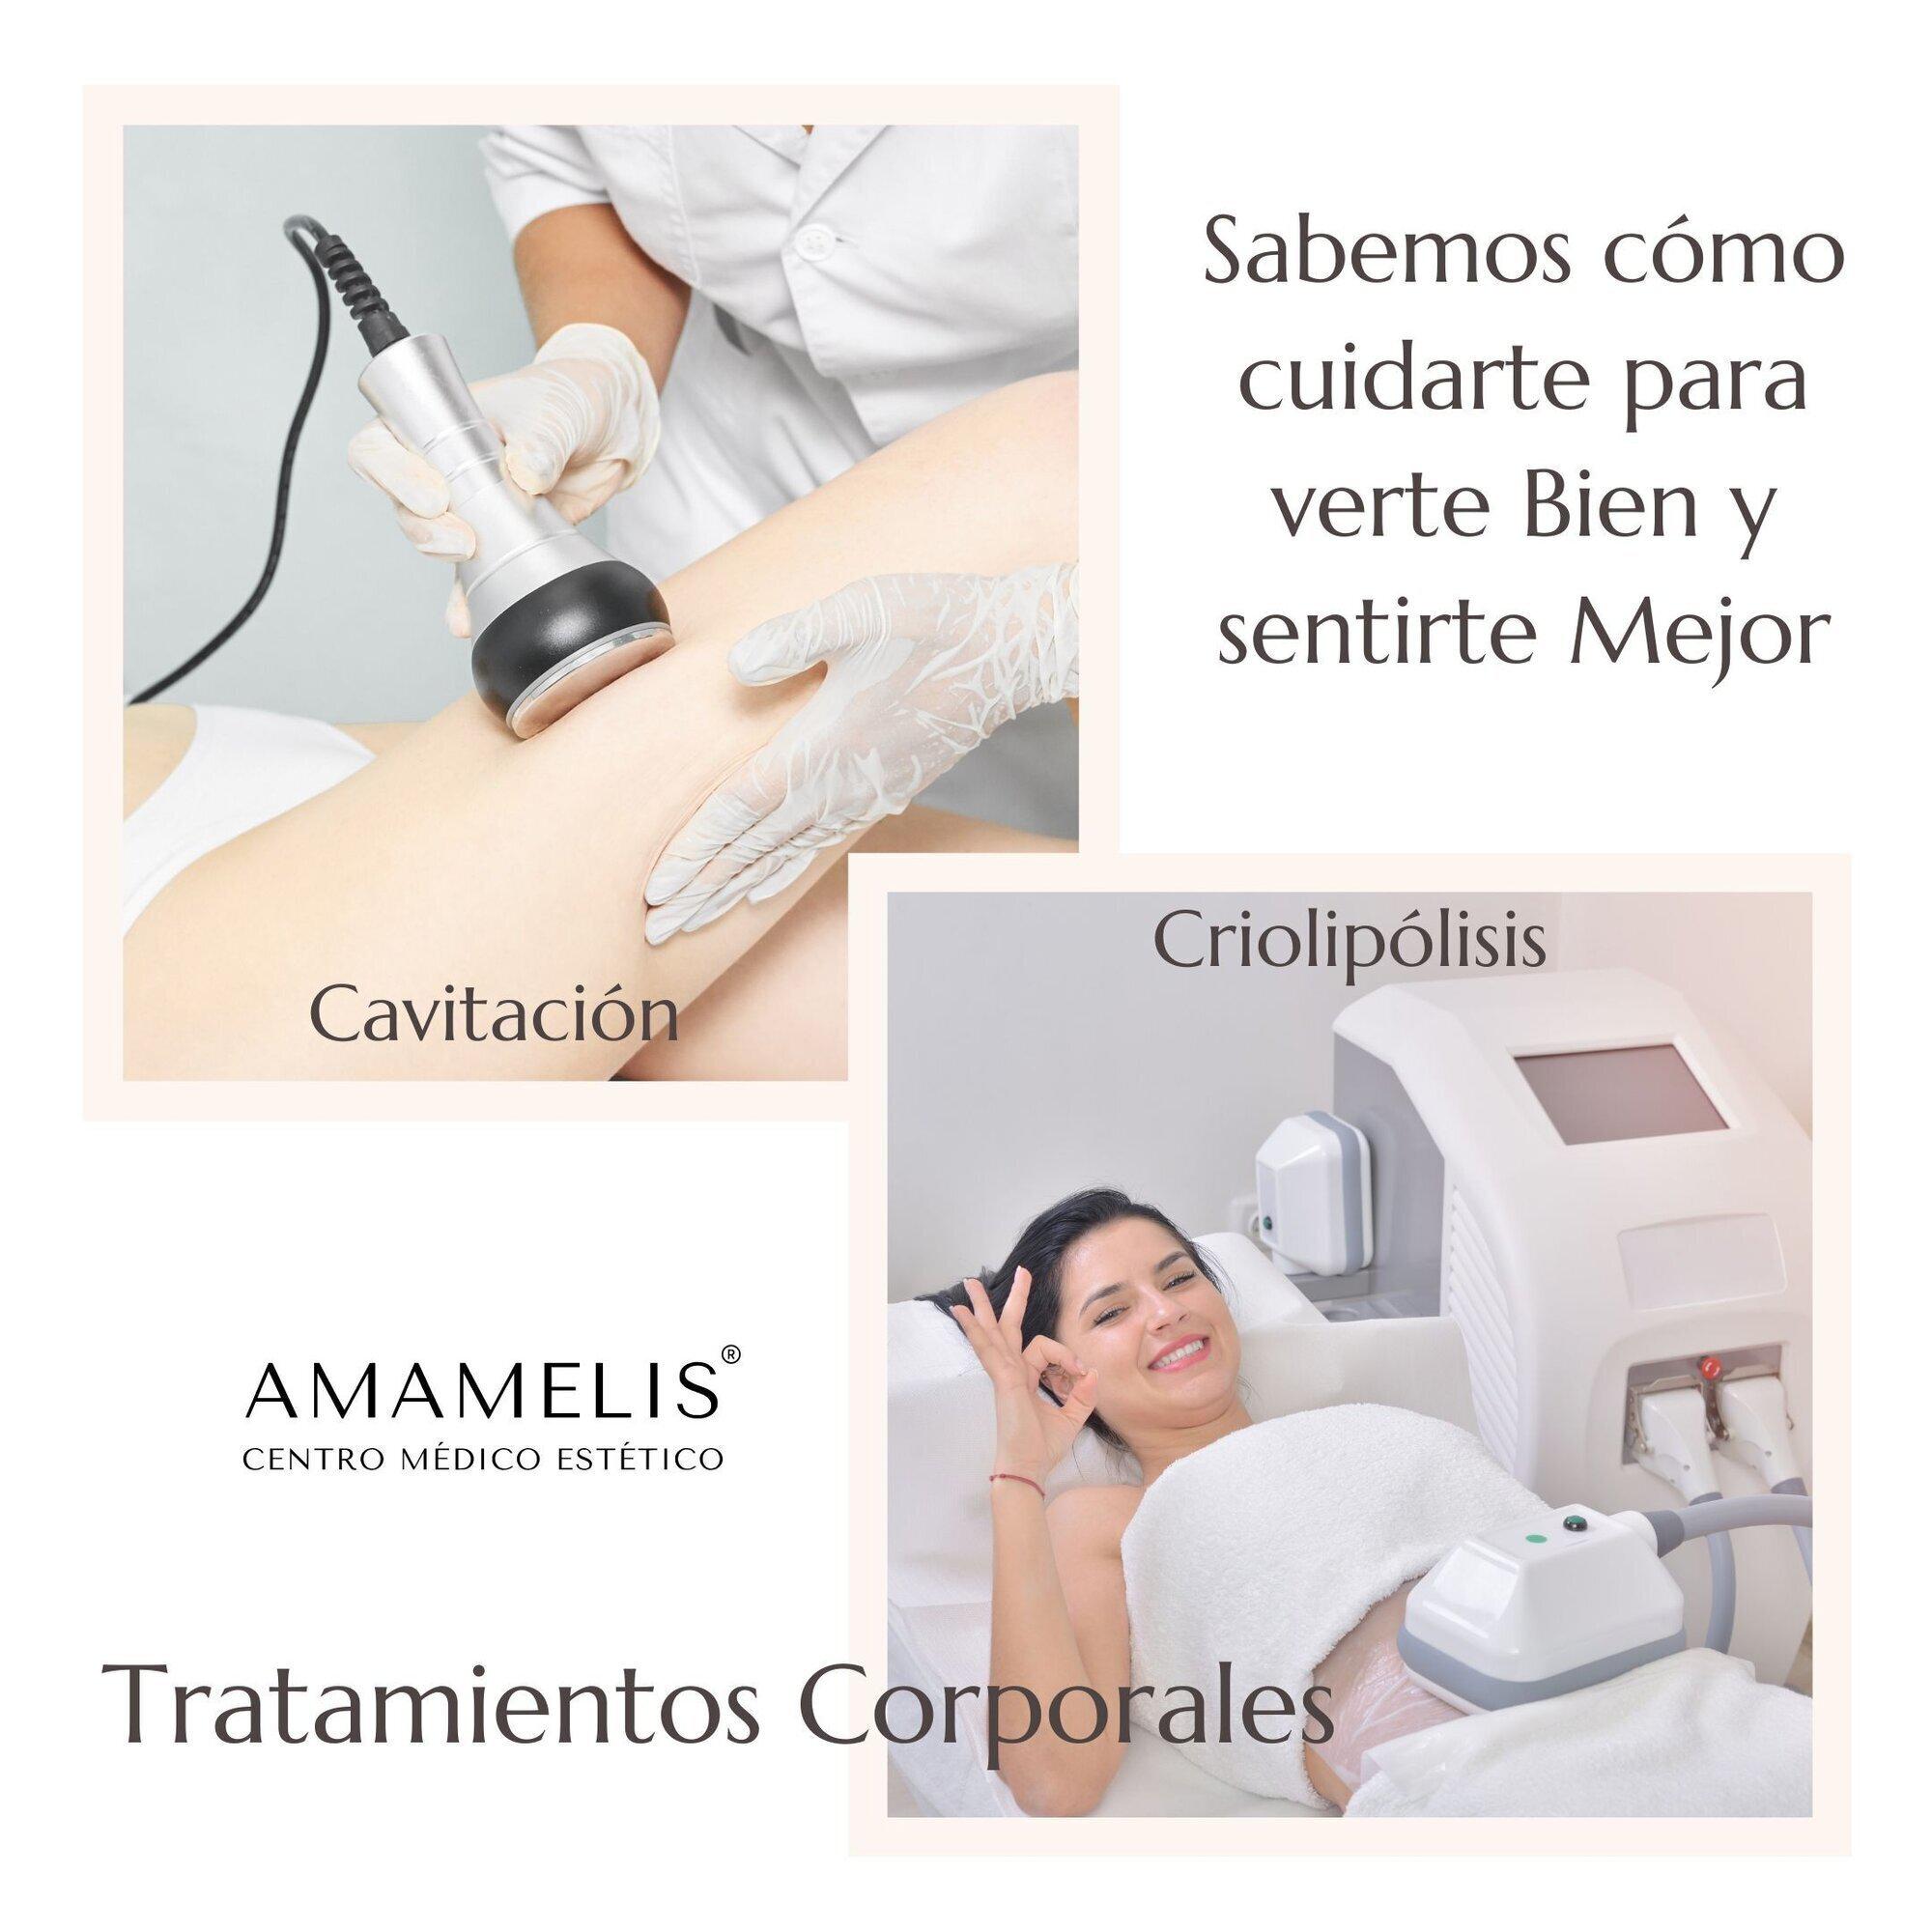 Images Amamelis Centro Médico Estético